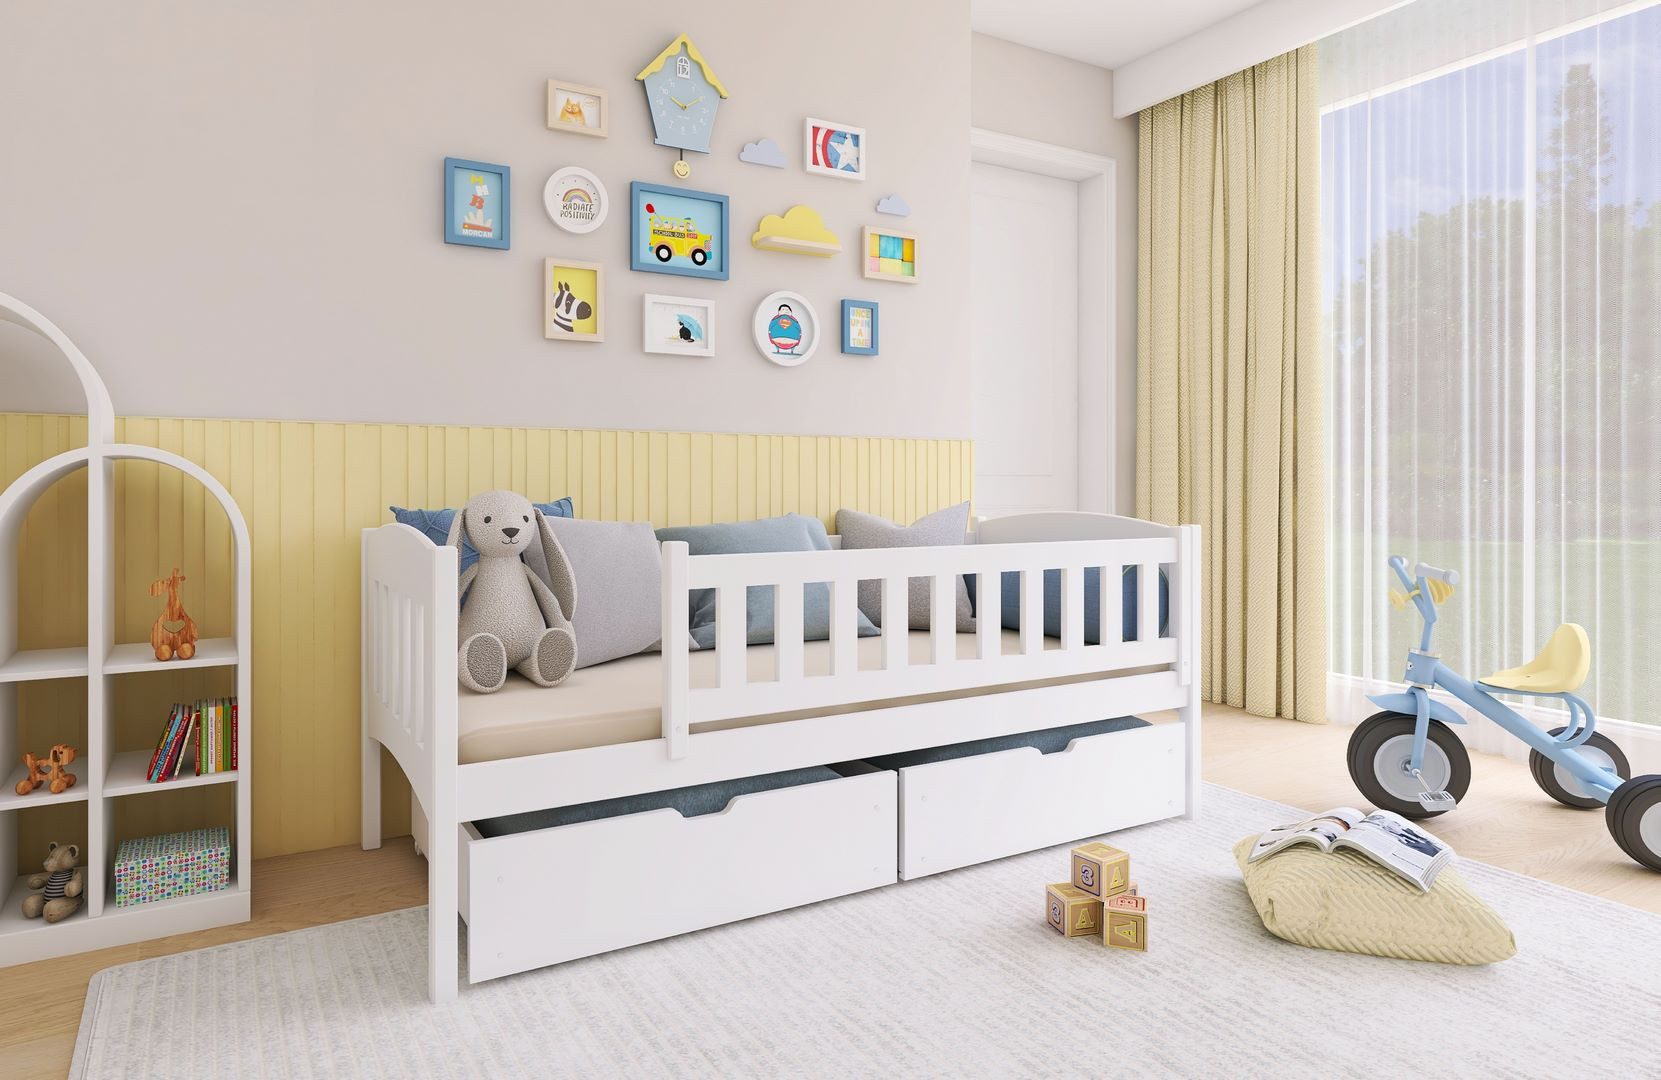 thematys Kinderbett 90x200 cm in Weiß – Einzelbett mit 2 Schubladen, mit Rausfallschutz, Kindersicher, Massivholz, Kinderzimmer für Jungen und Mädchen